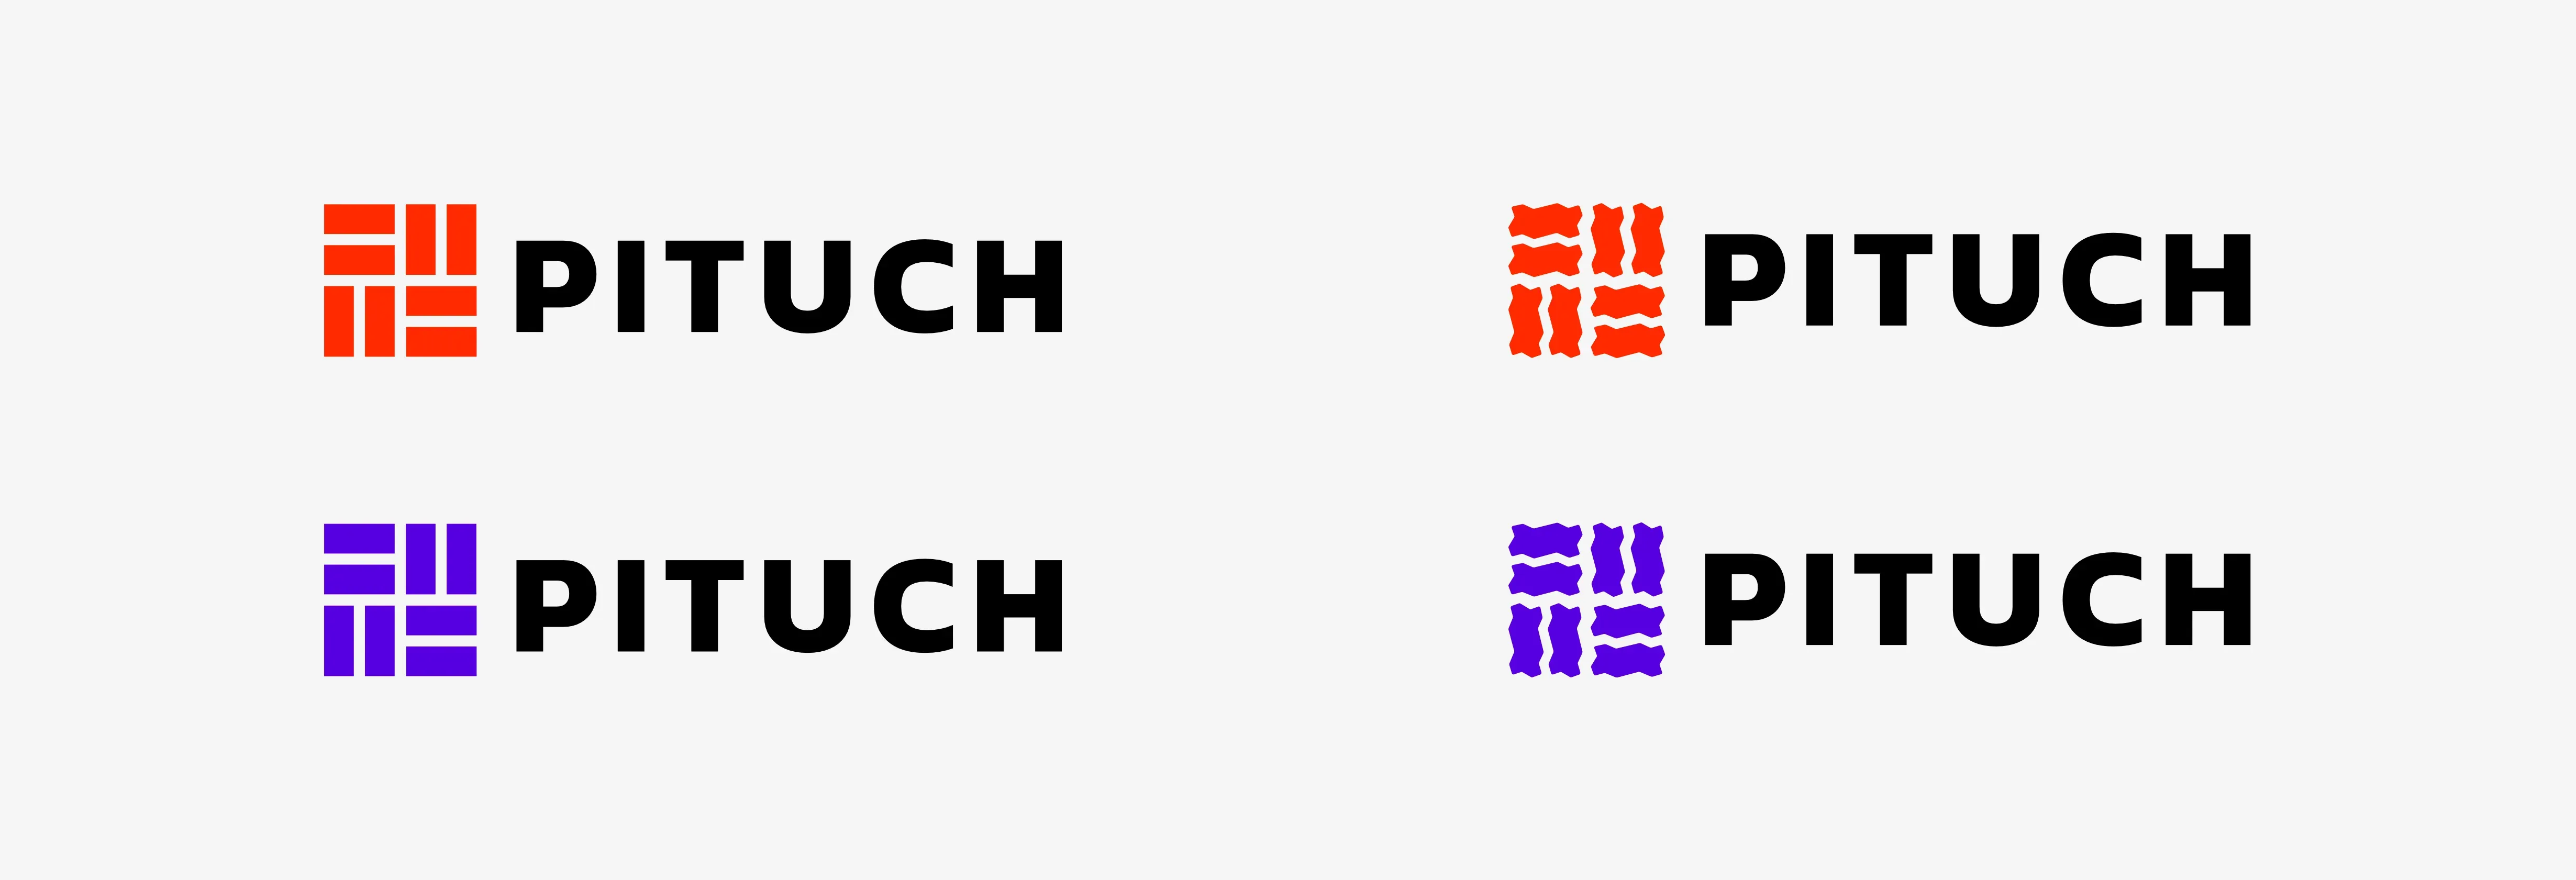 Logo variations